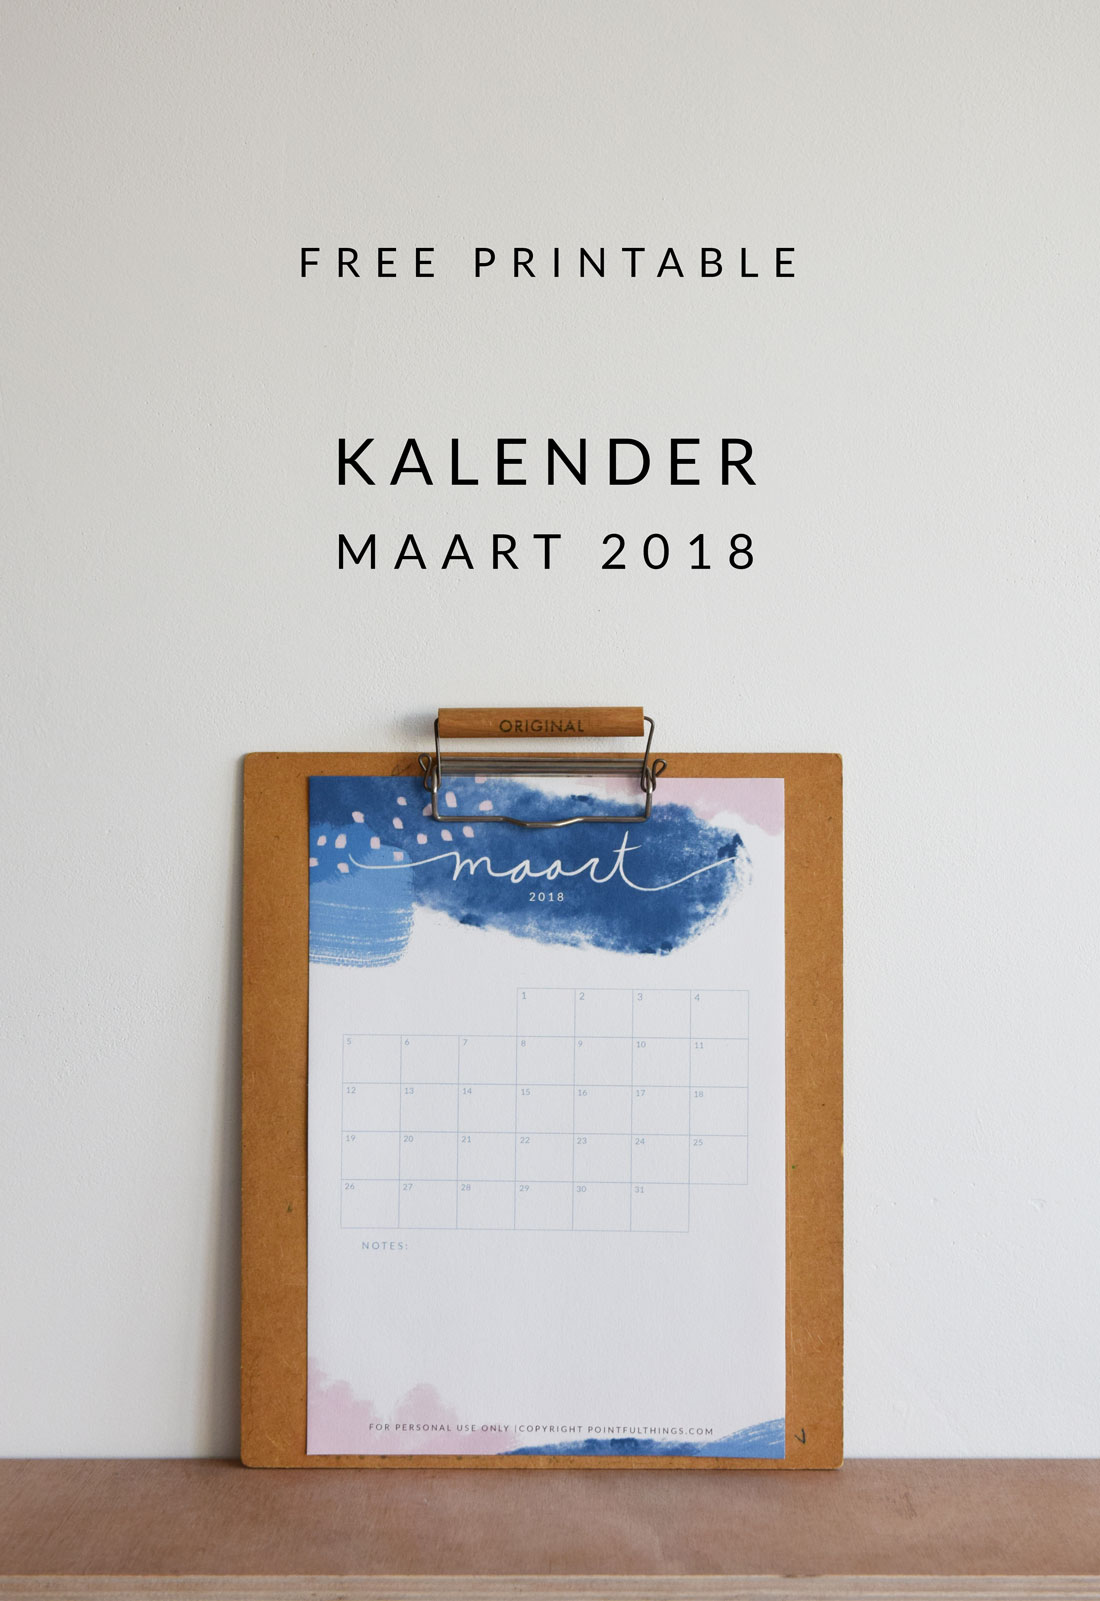 Free Printable | Kalender Maart 2018 - Pointful Things